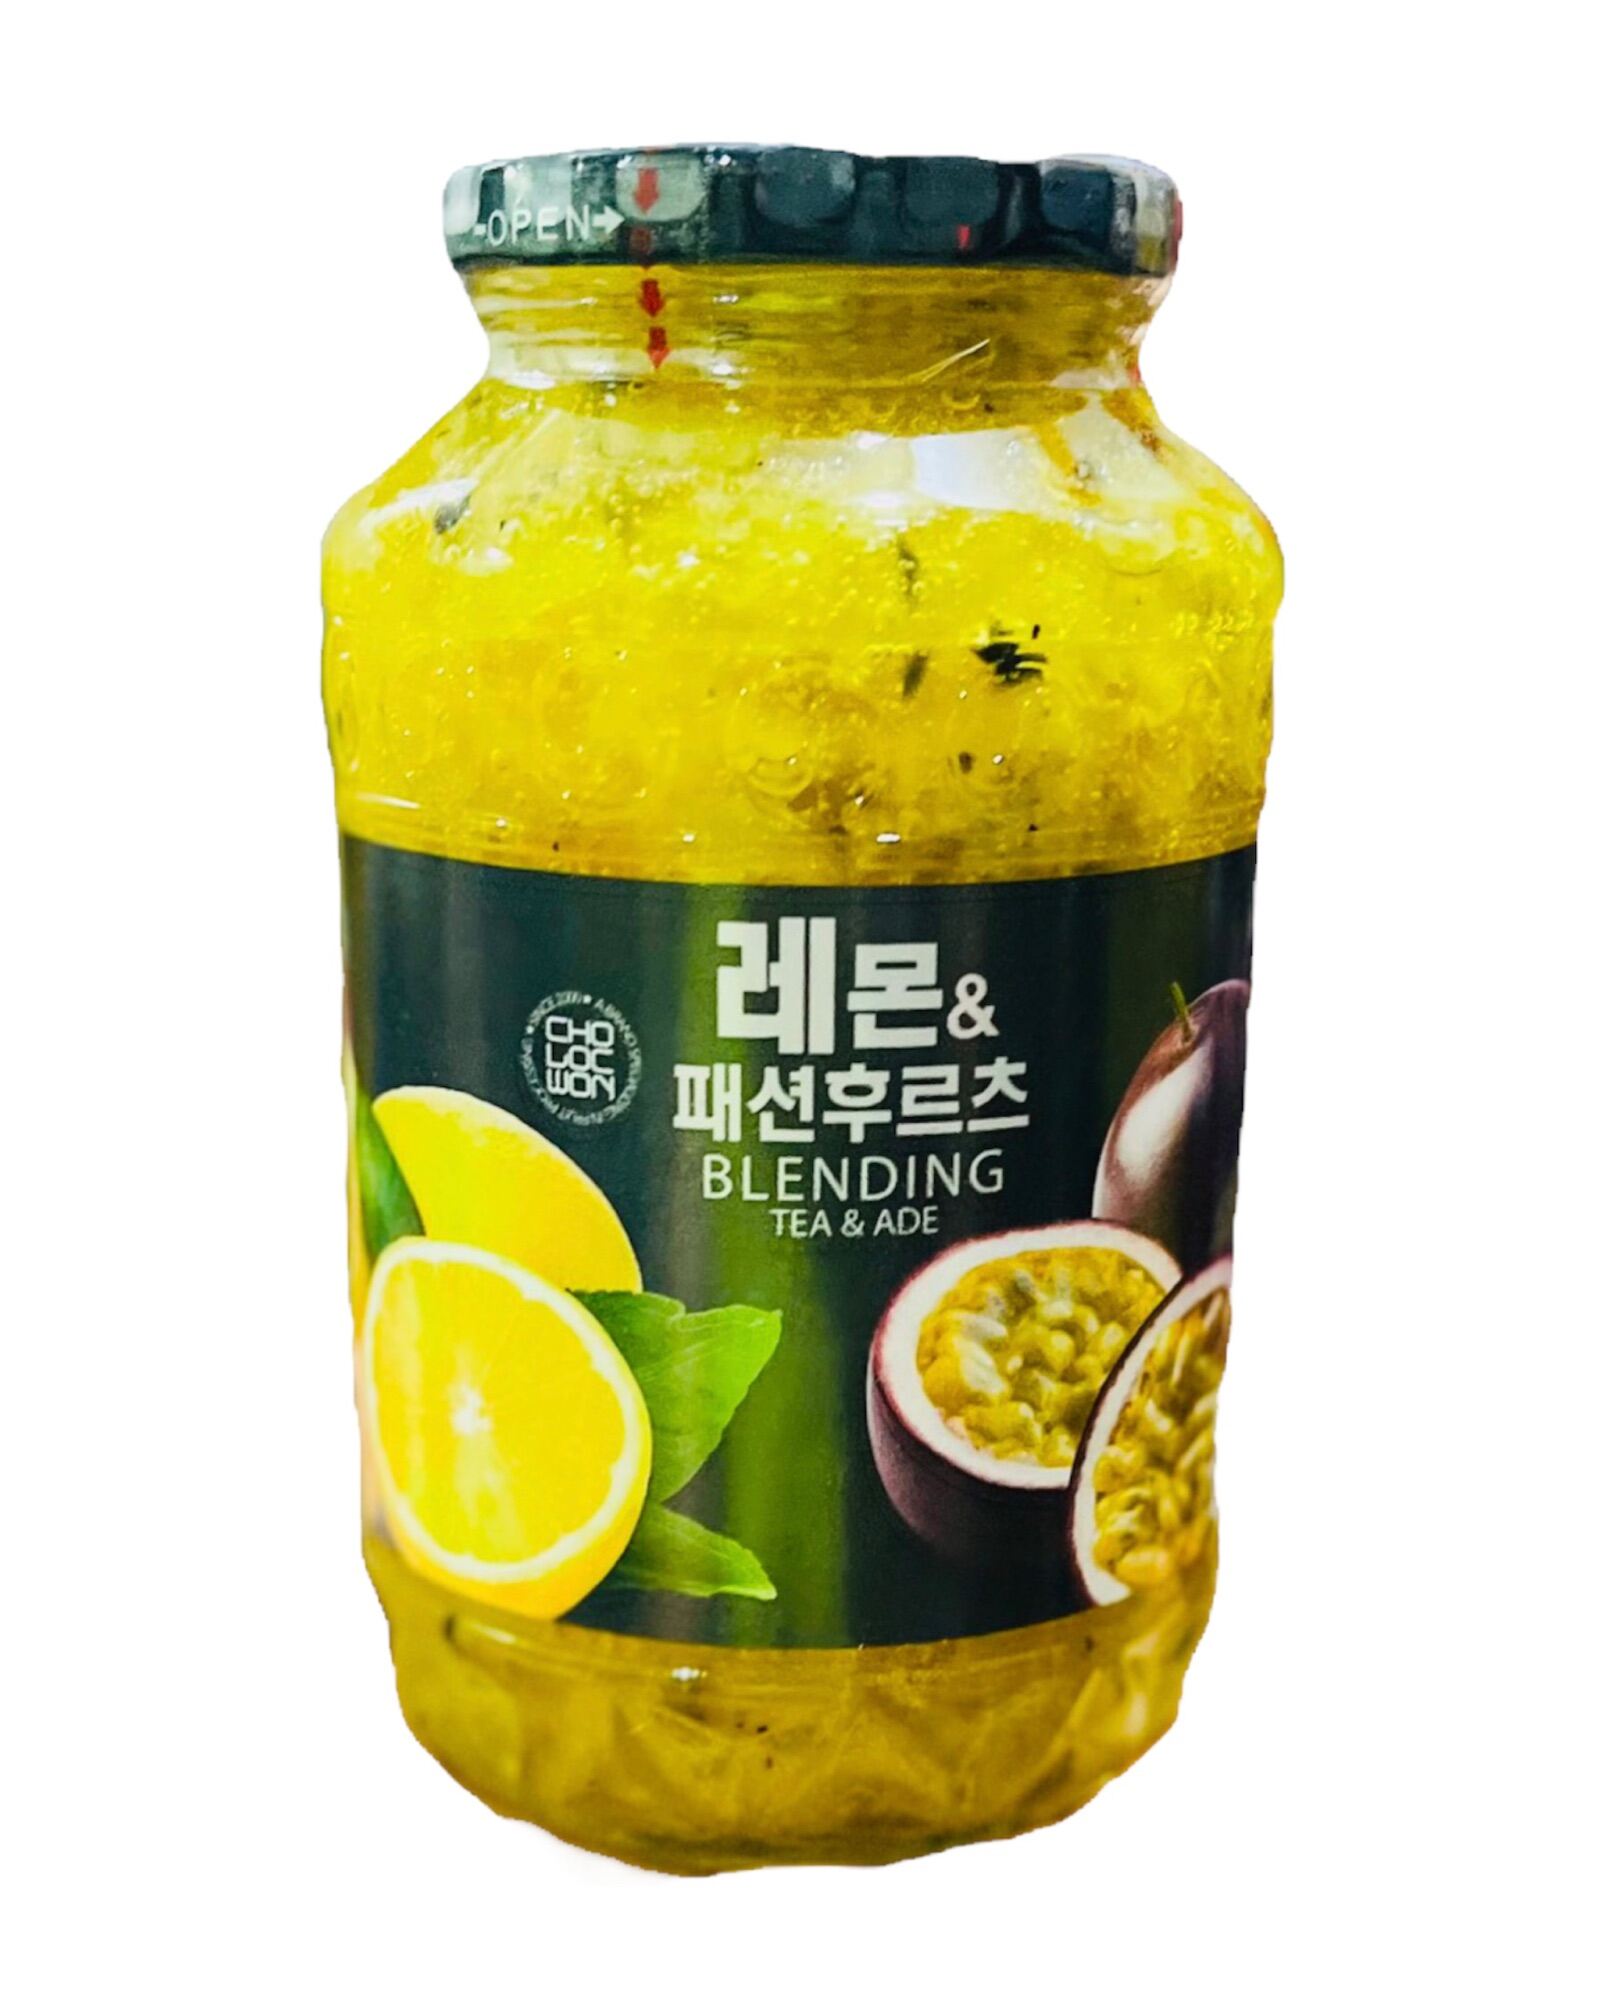 Trà chanh vàng - chanh dây mật ong Cholocwon Hàn Quốc - Hũ 1kg